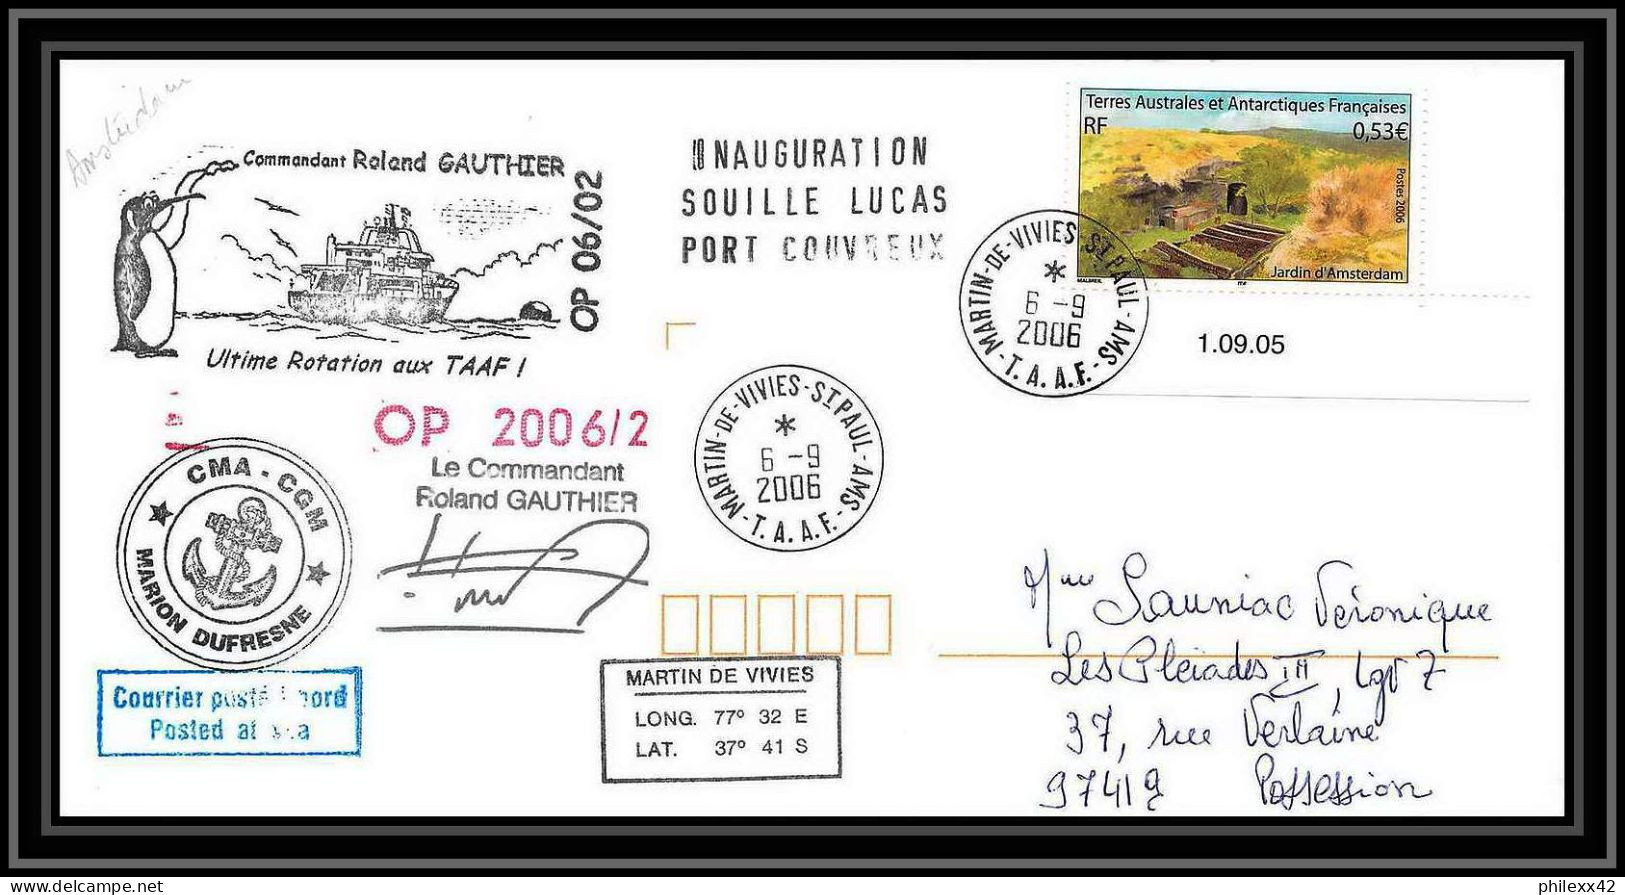 2600 ANTARCTIC Terres Australes TAAF Lettre Cover Dufresne 2 Signé Signed Op 2006/2 N°438 6/9/2006 Coin Daté - Expéditions Antarctiques